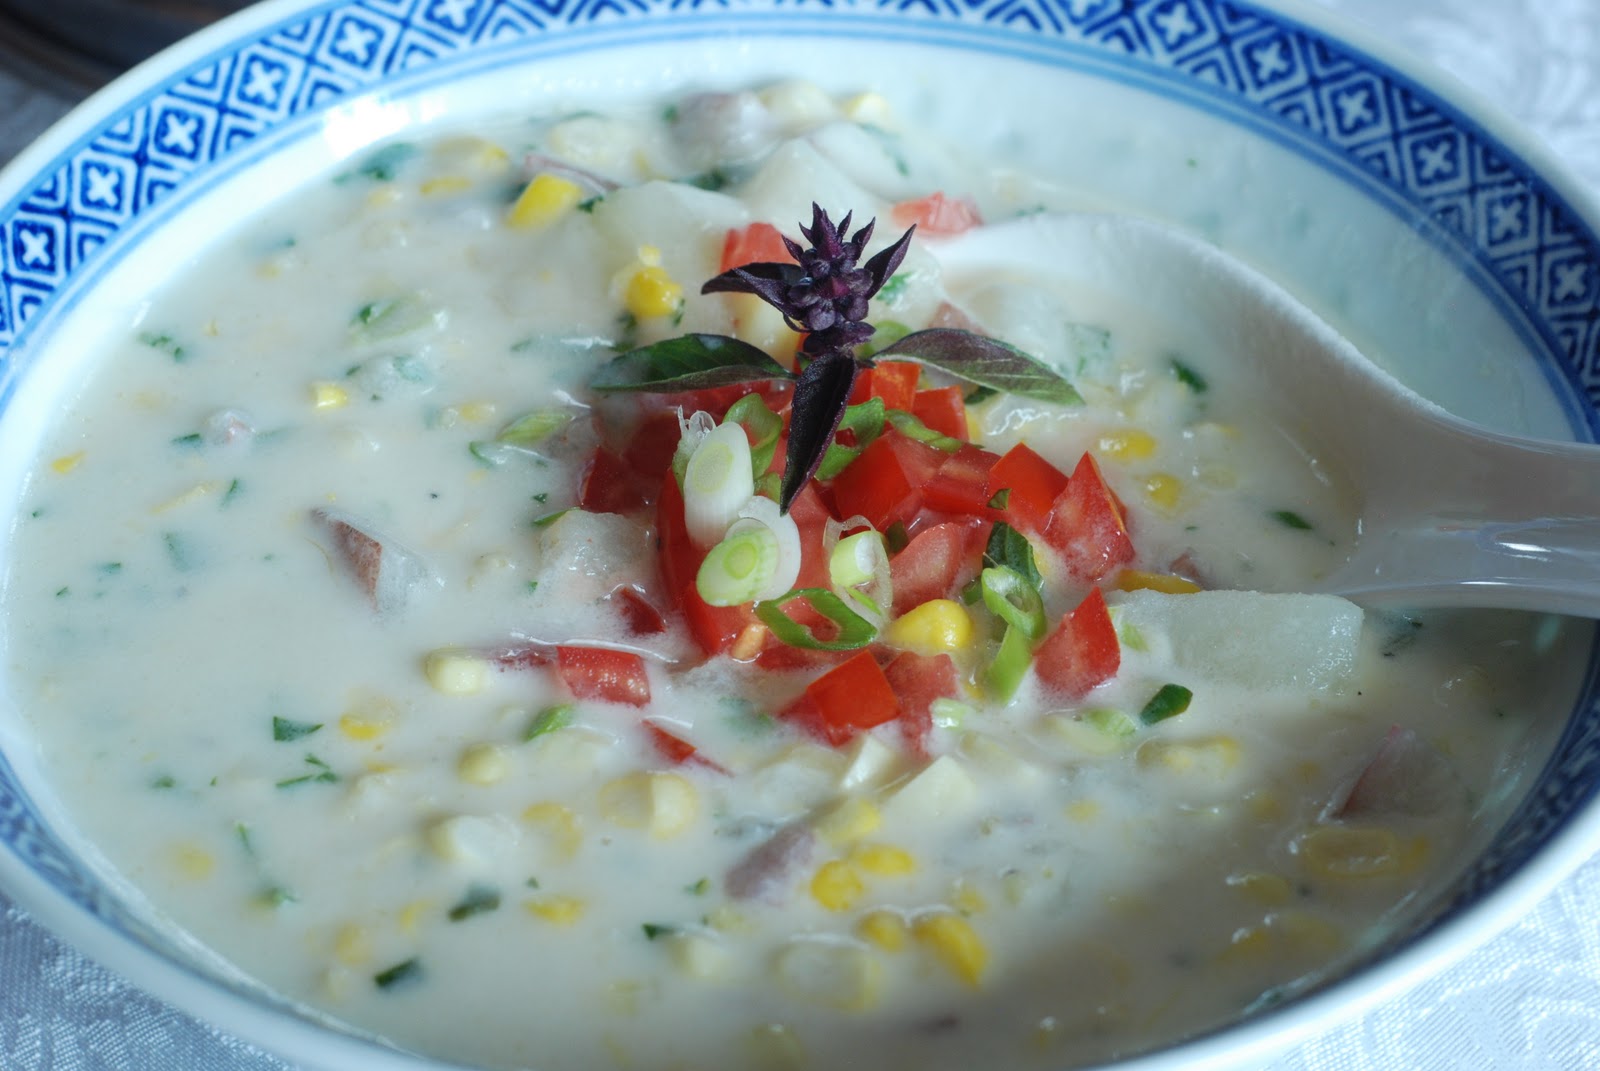 Thai Corn Chowder - Simply So Good